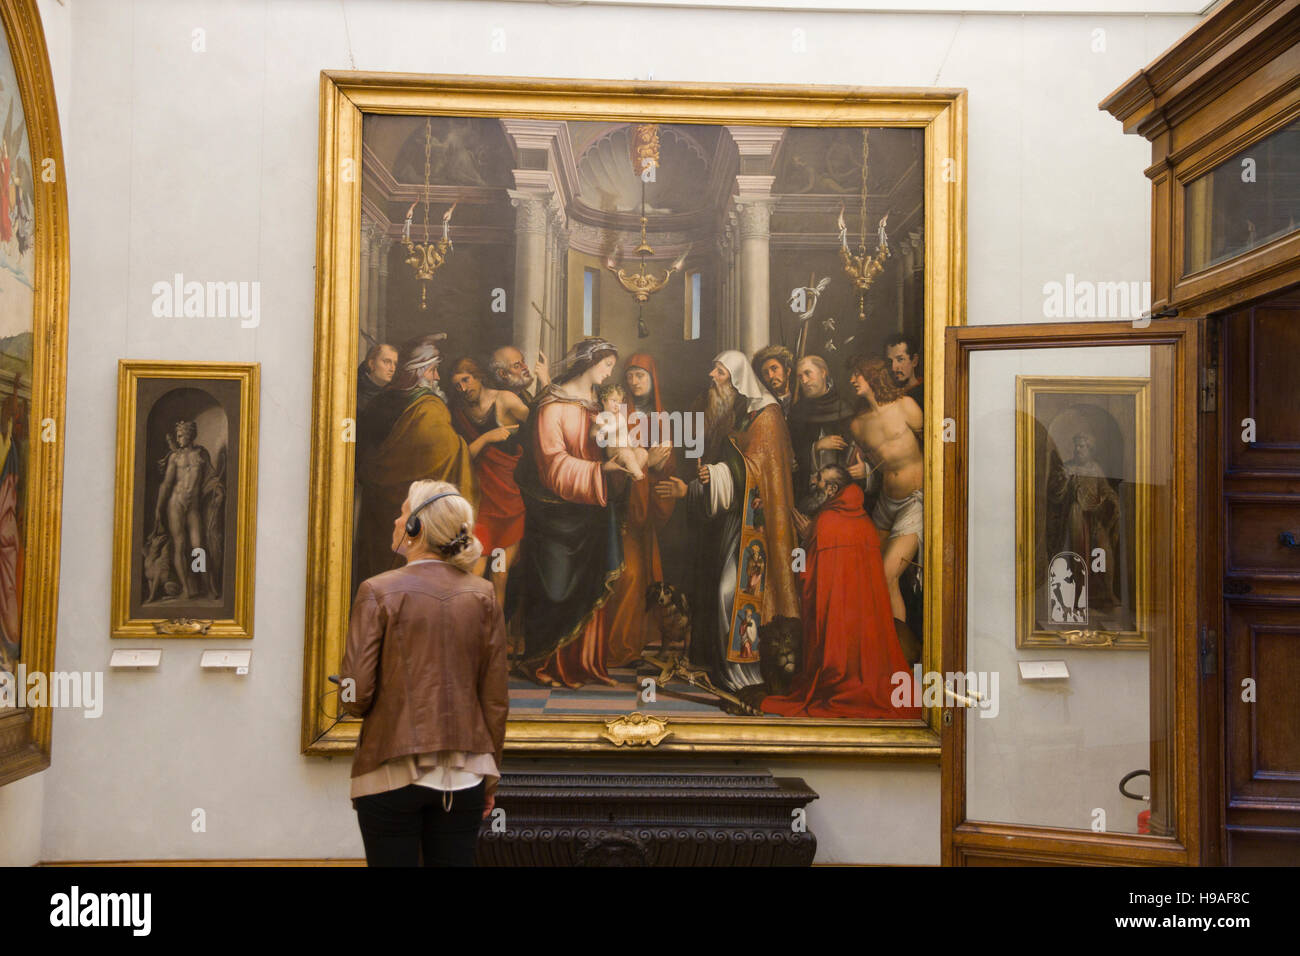 Femme à la recherche de l'art peint dans une pièce, les musées du Capitole Musei Capitolini, scène Rome, Italie, du patrimoine d'art monument touristique Banque D'Images